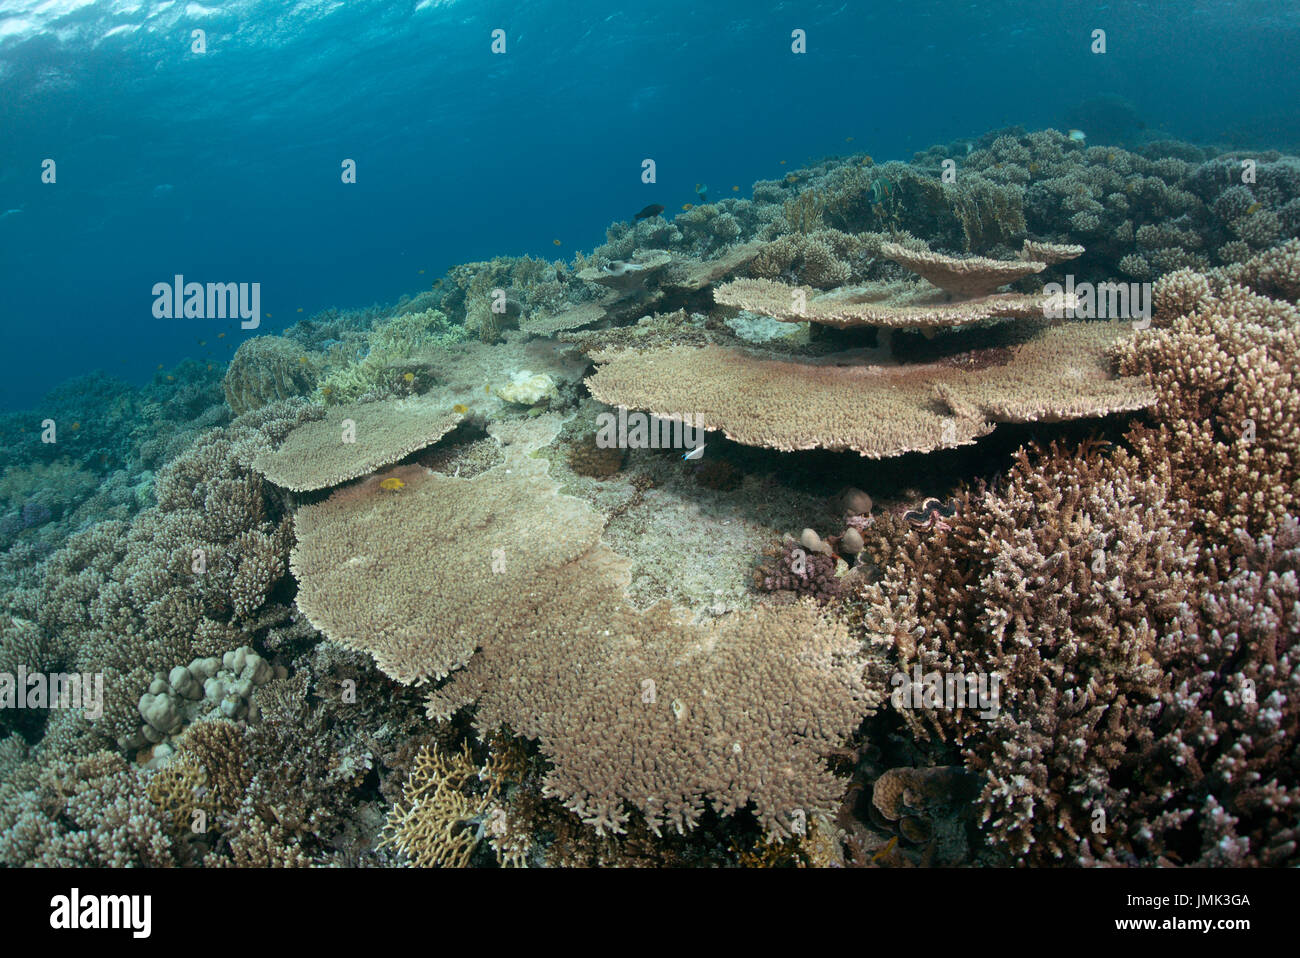 Un beau récif corallien sain avec une table de coraux dans les eaux cristallines de la Mer Rouge près de Hurghada, Egypte. Banque D'Images